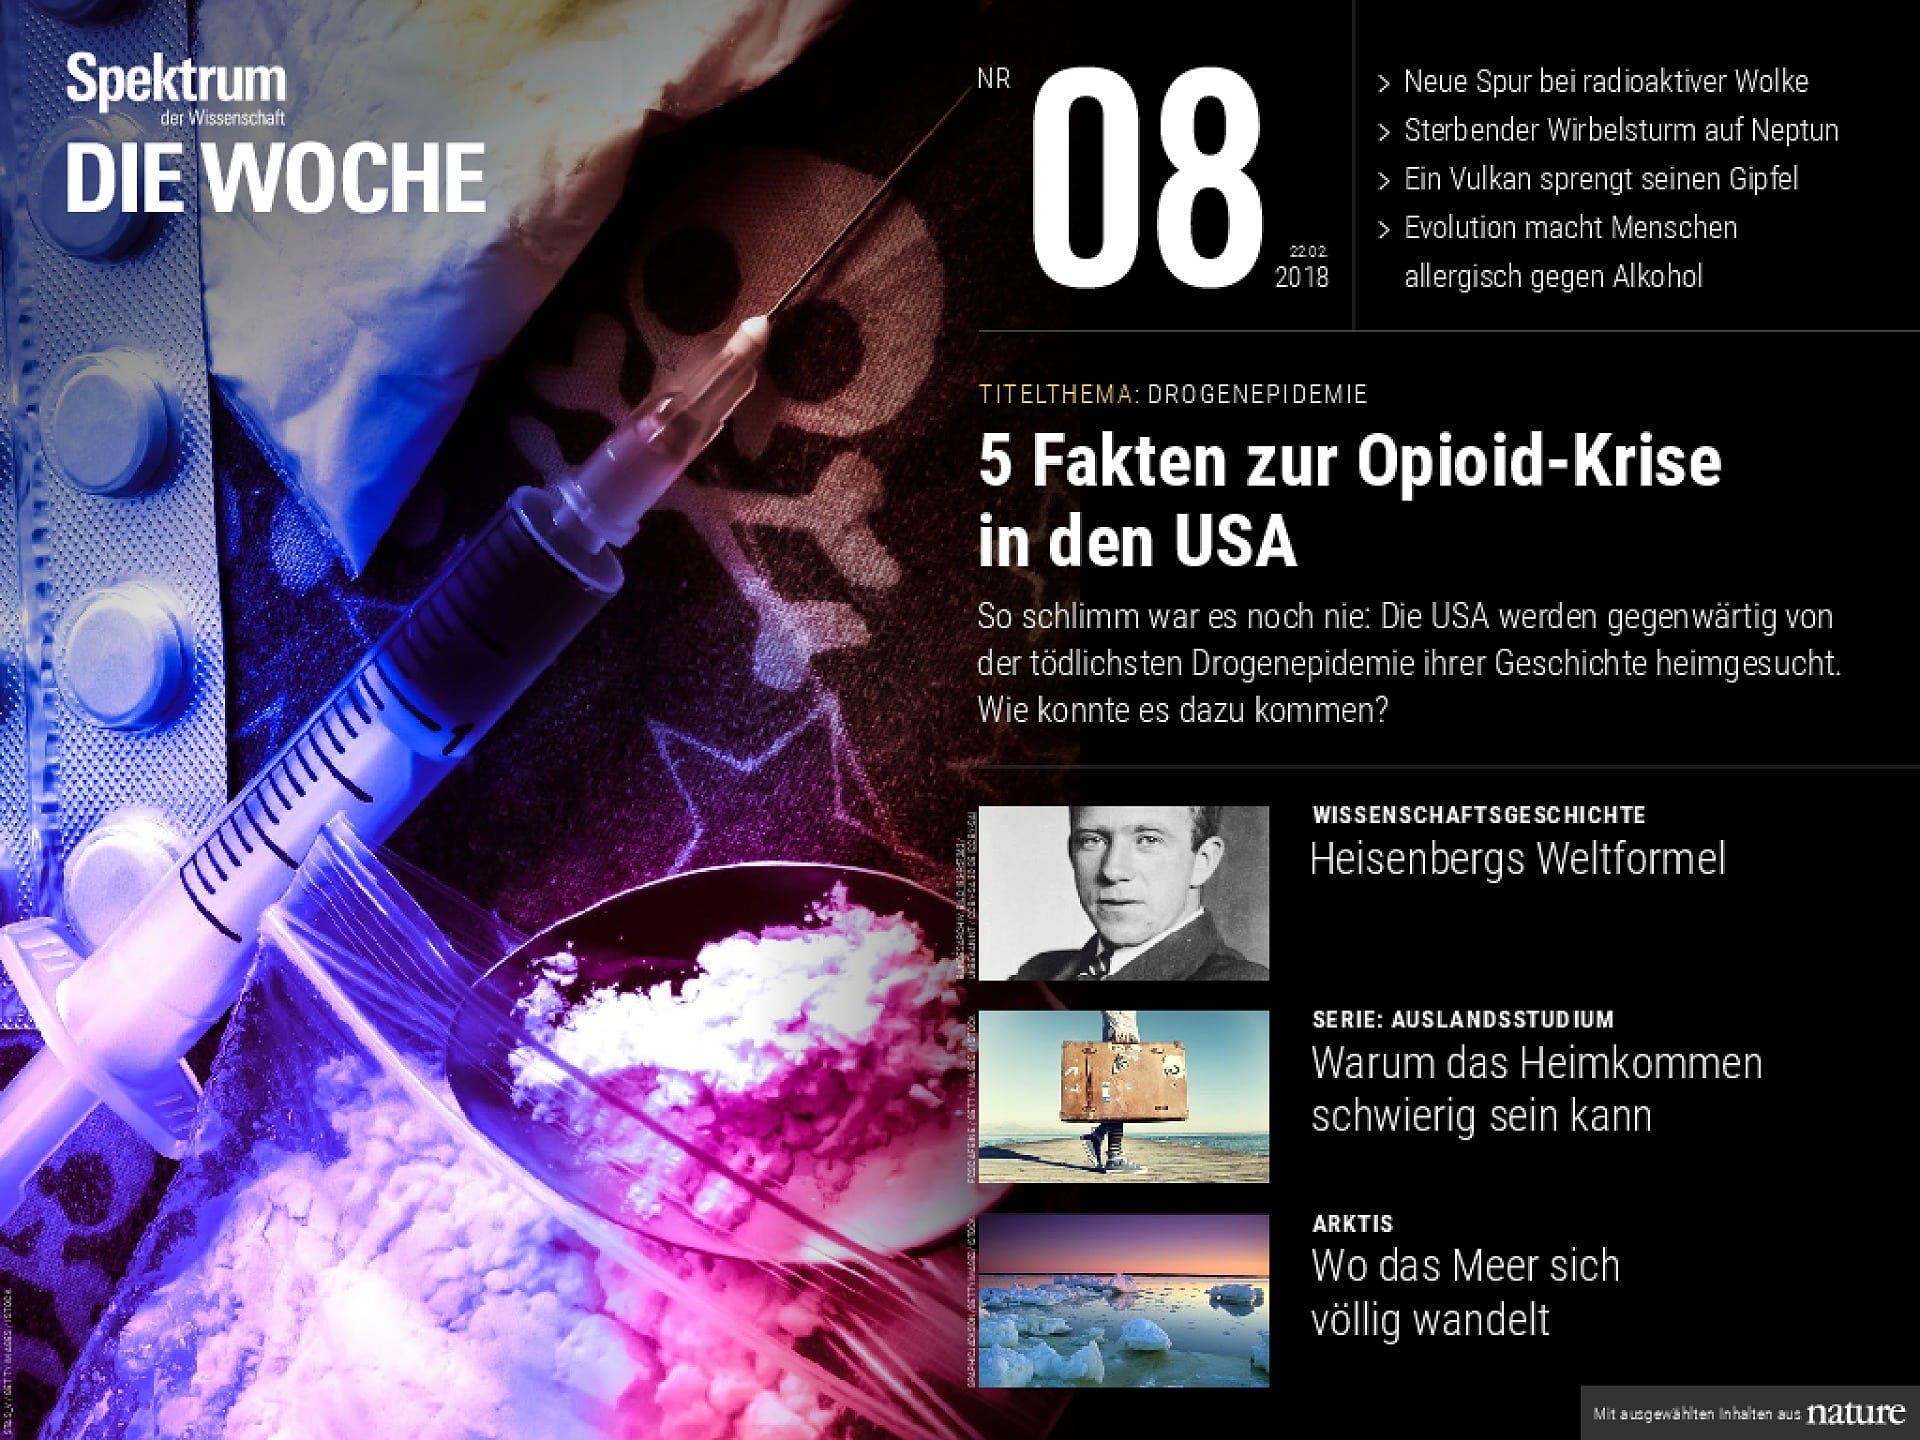 5 Fakten zur Opiod-Krise in den USA